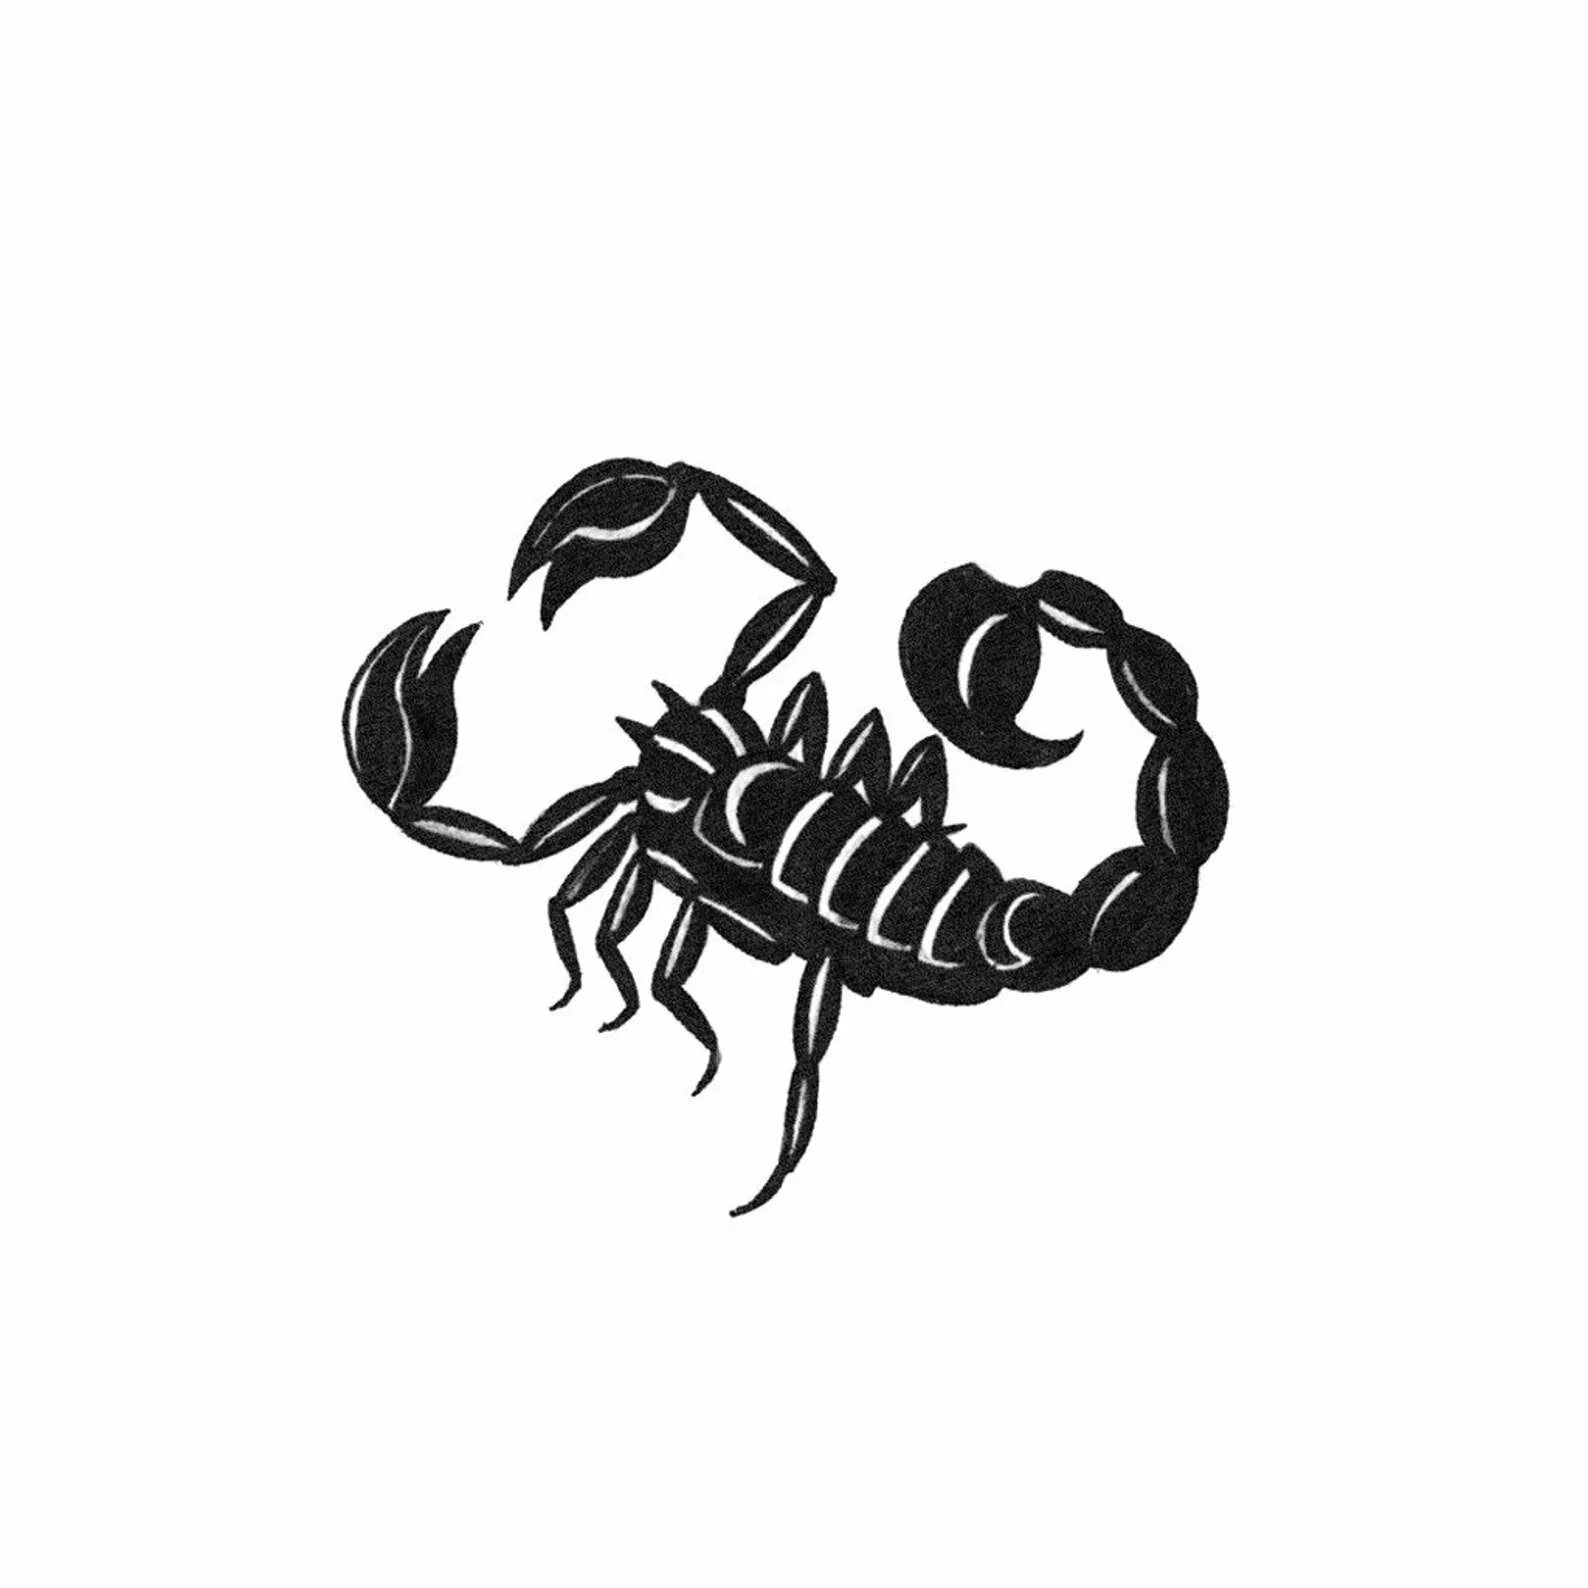 Скорпион s1e6